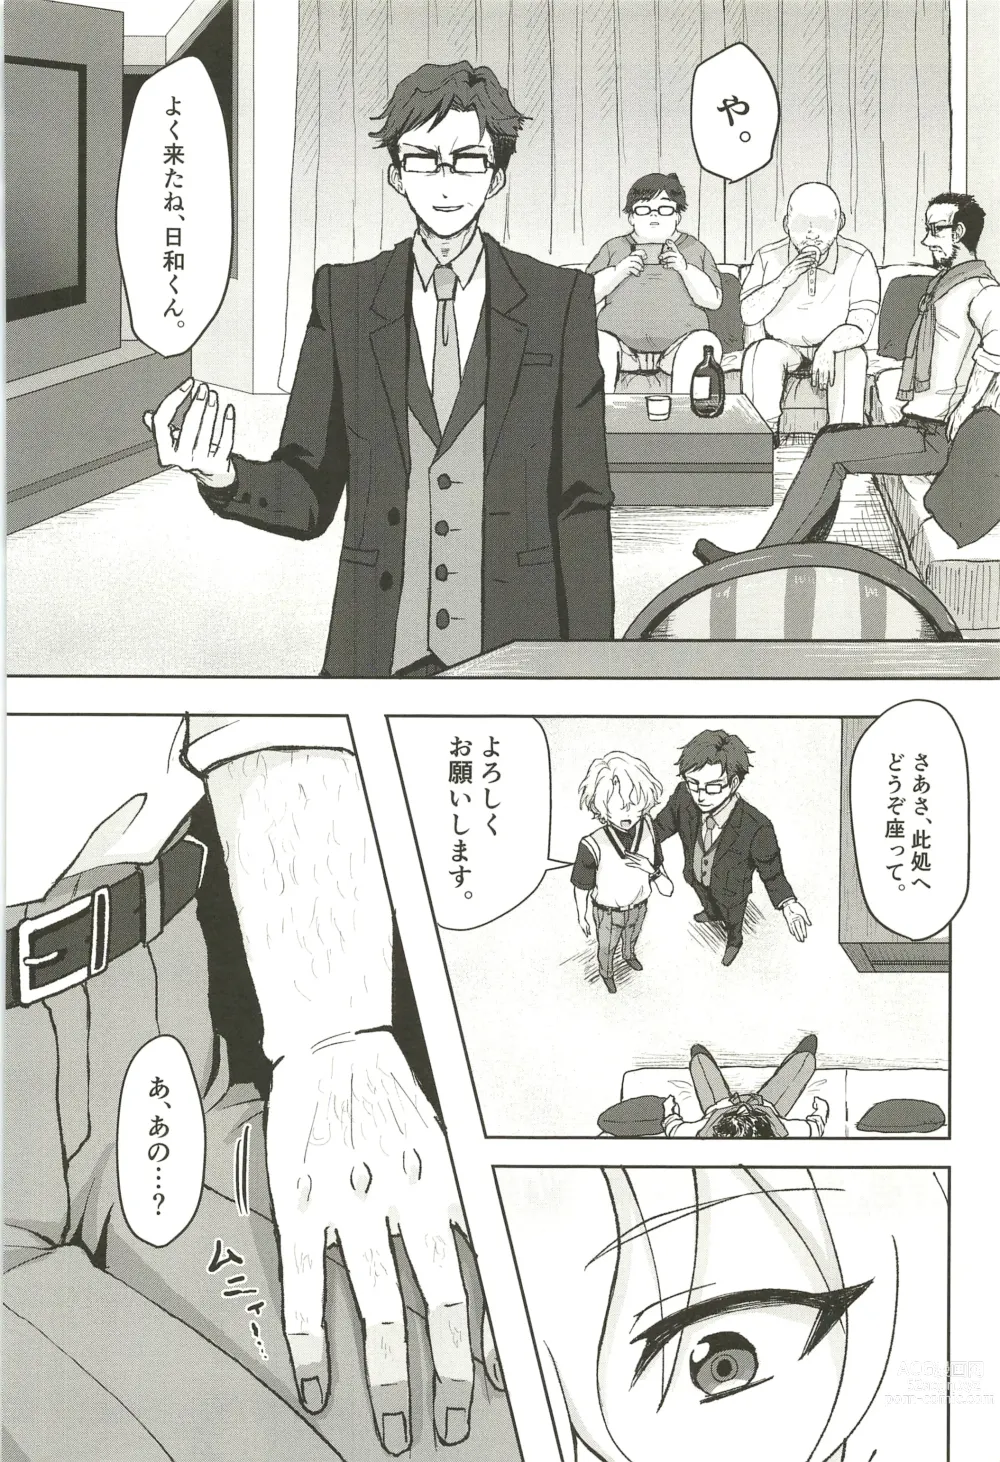 Page 6 of doujinshi Ochiru.